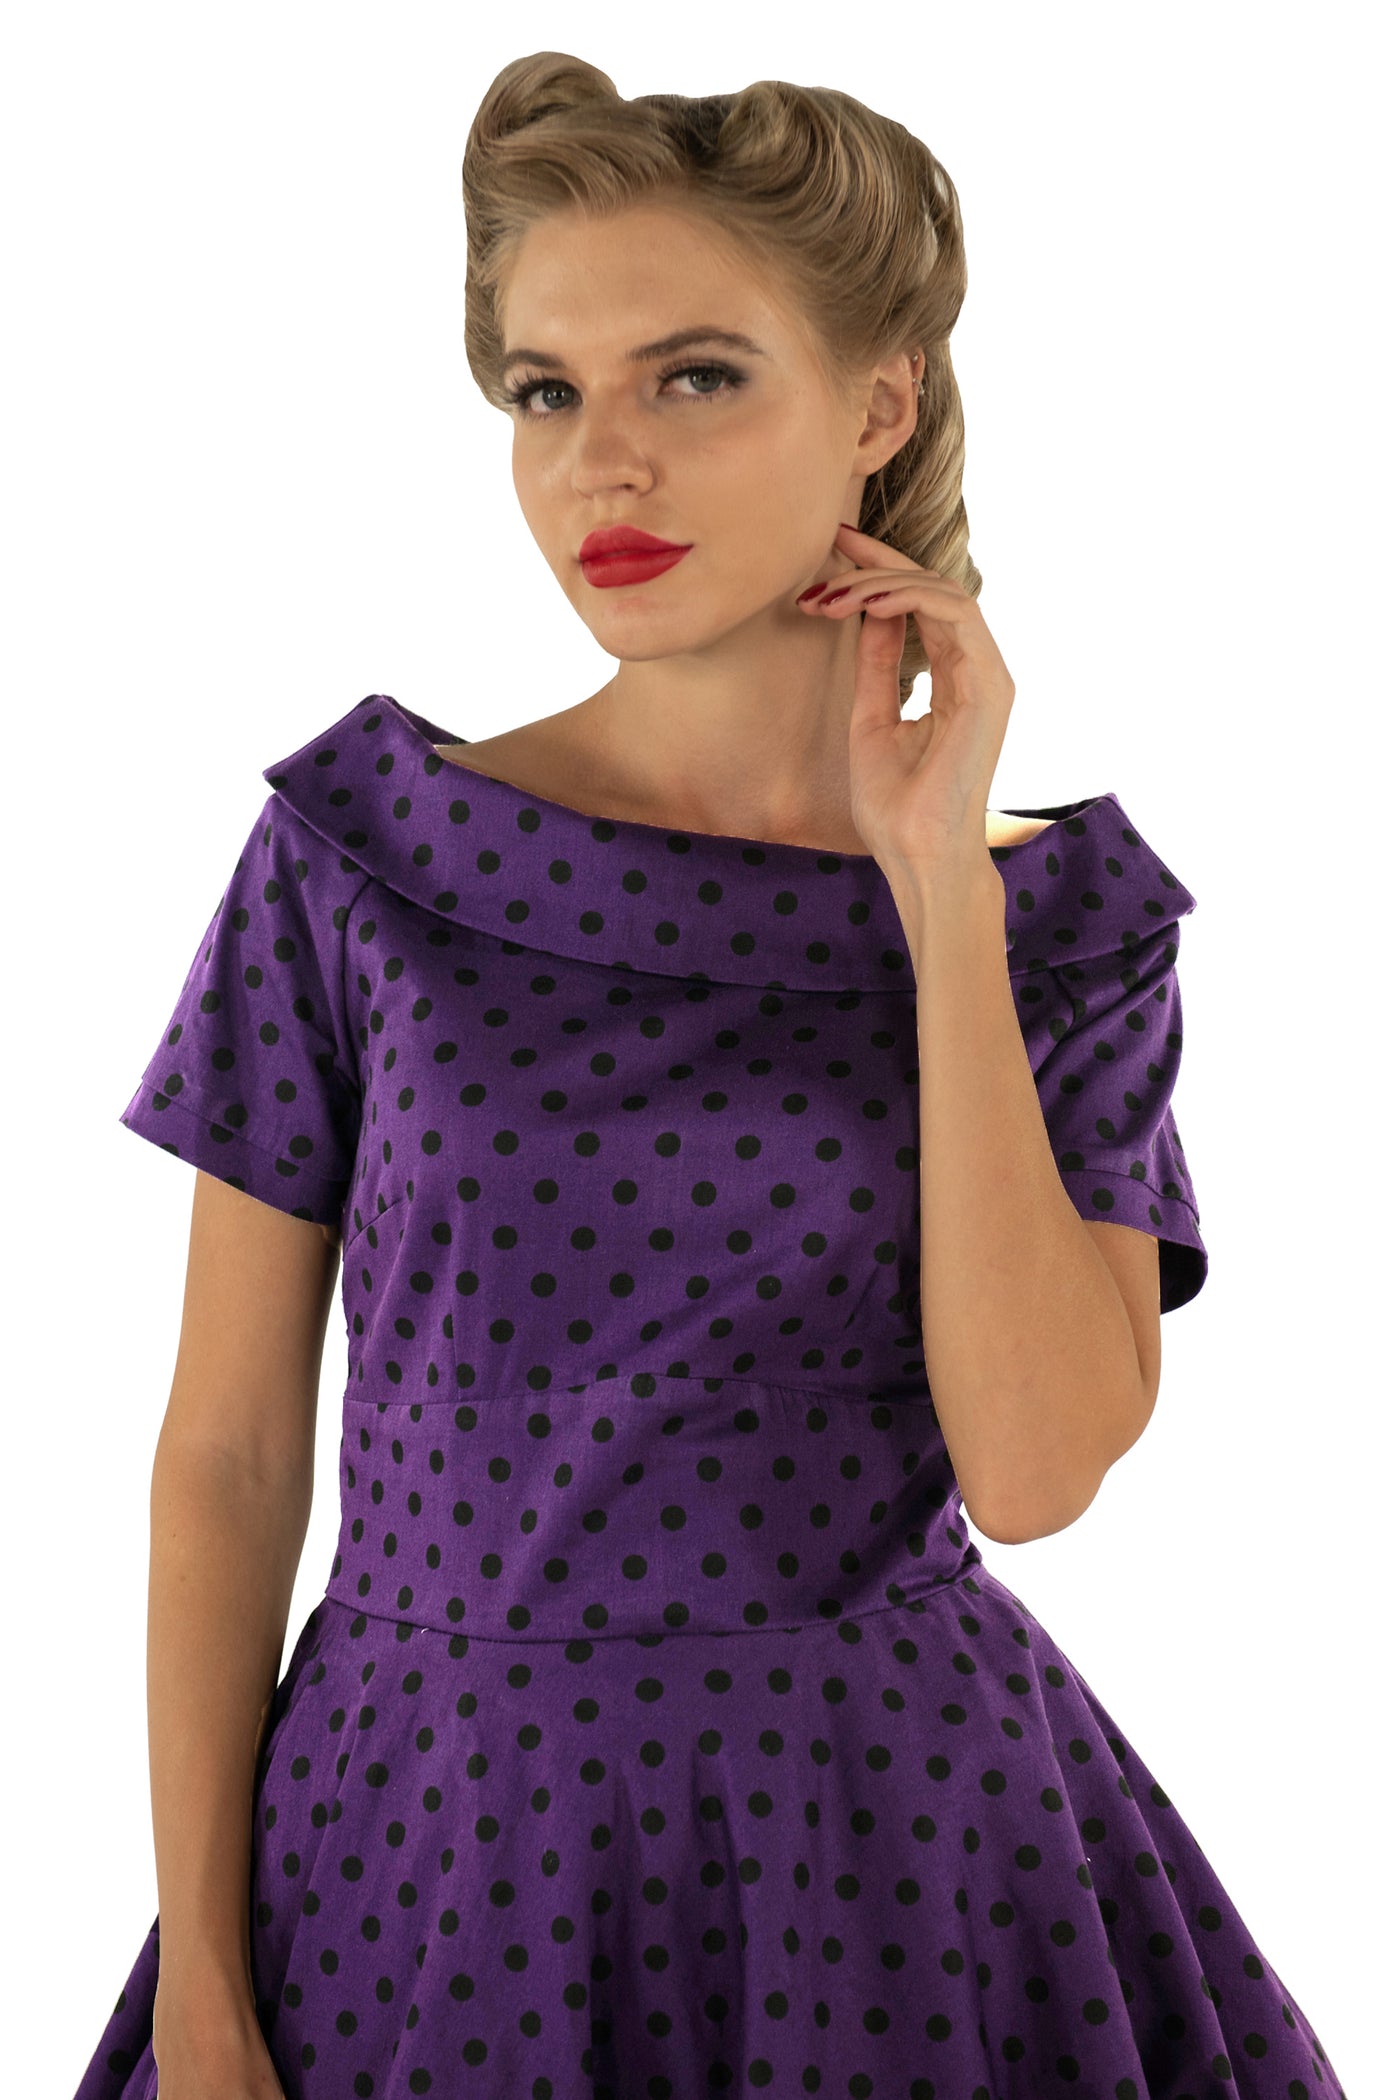 Darlene Retro Polka Dot Swing Dress in Purple